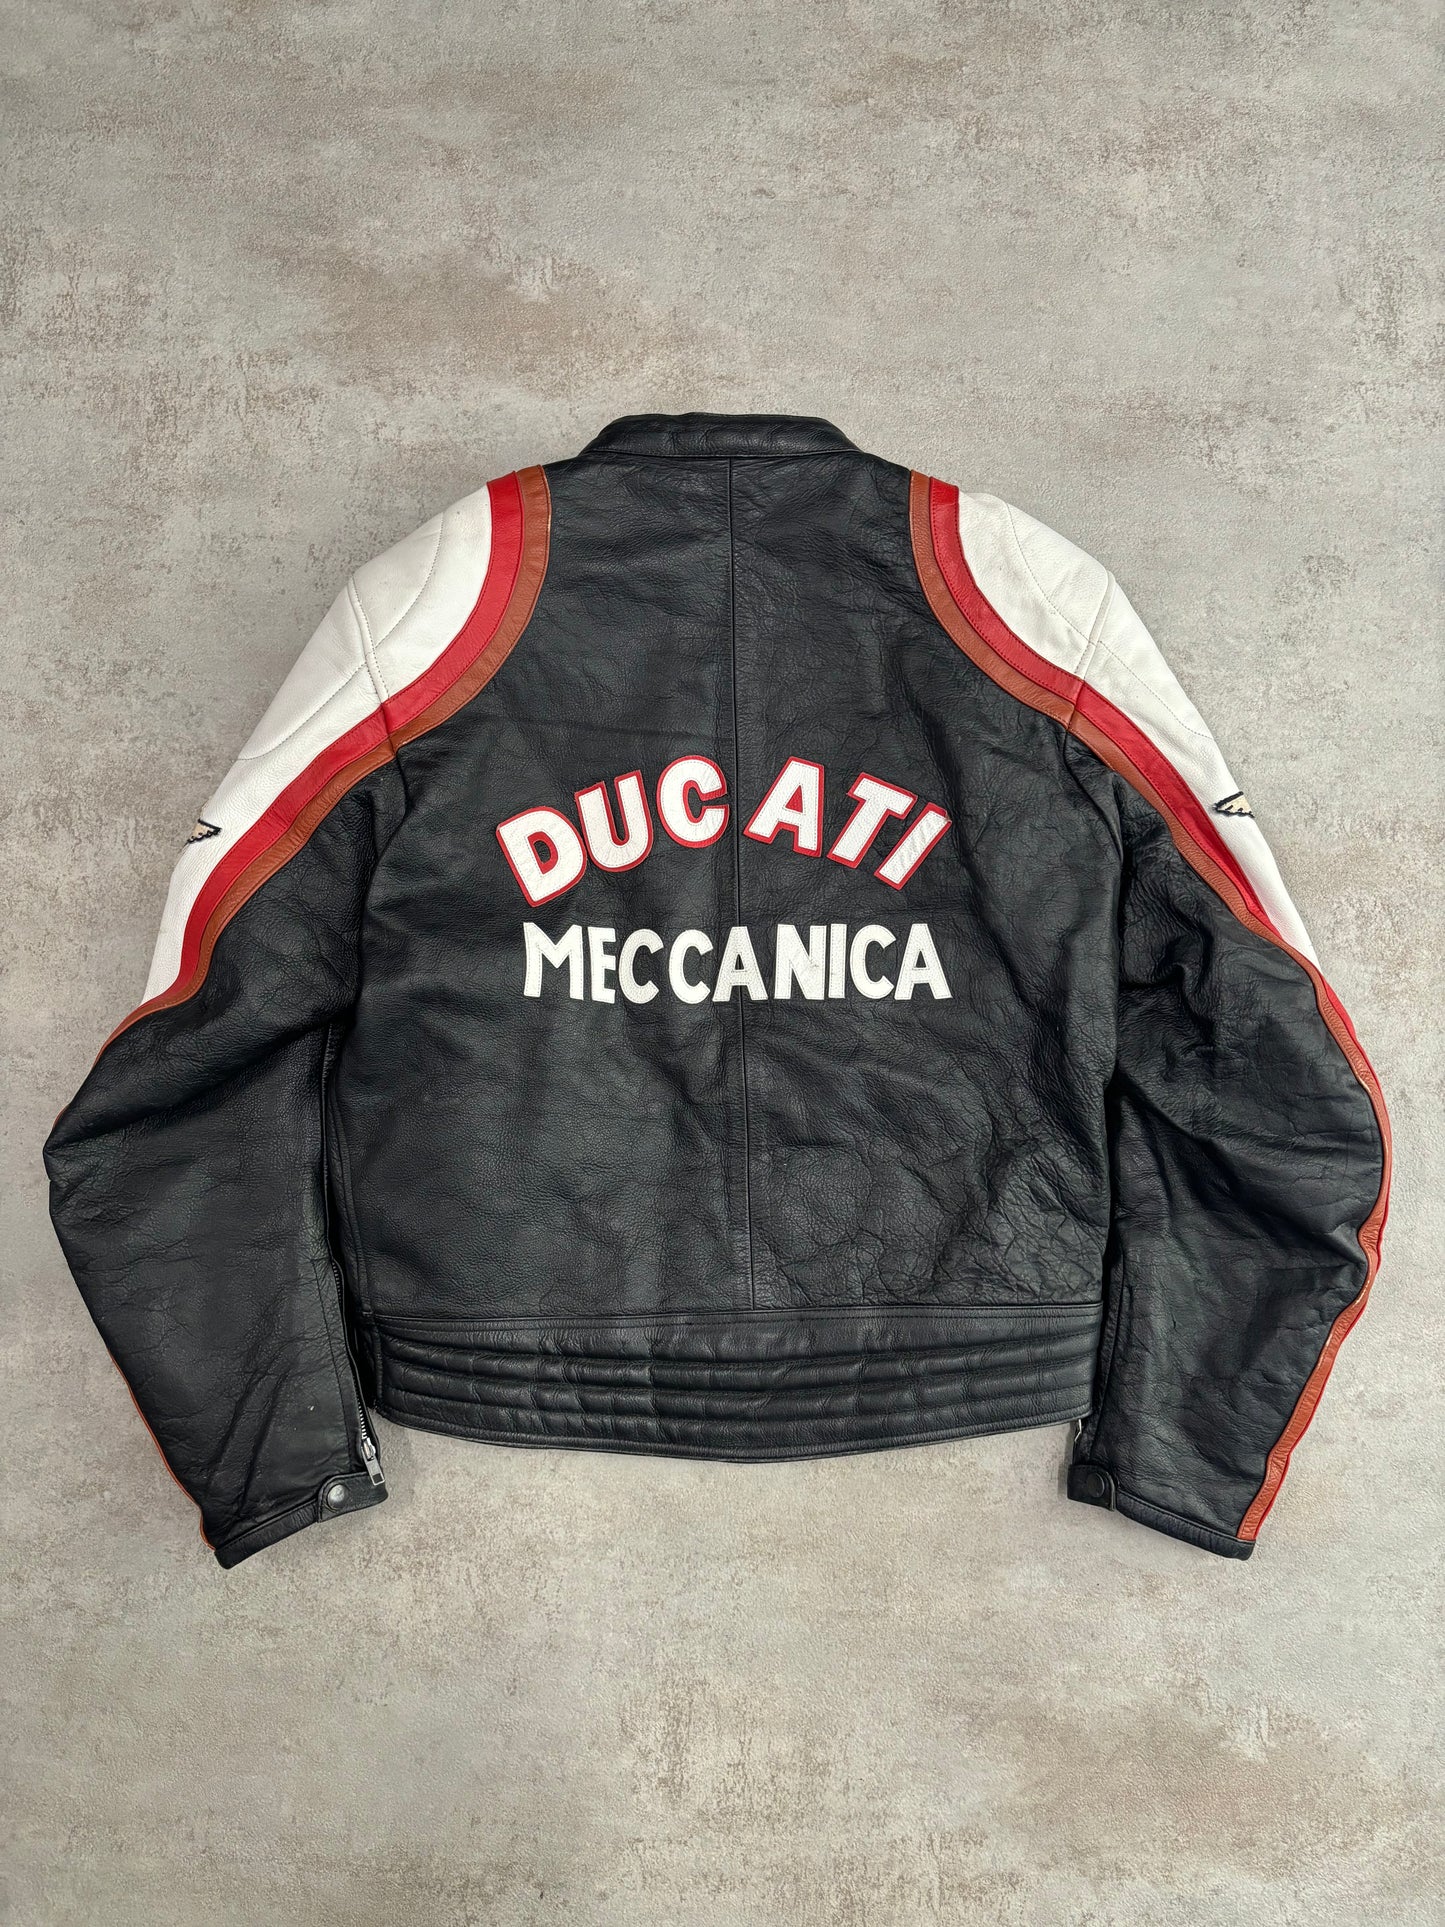 Chaqueta Cuero ‘Tom Cruise’ Ducati Meccanica 90s Vintage - M